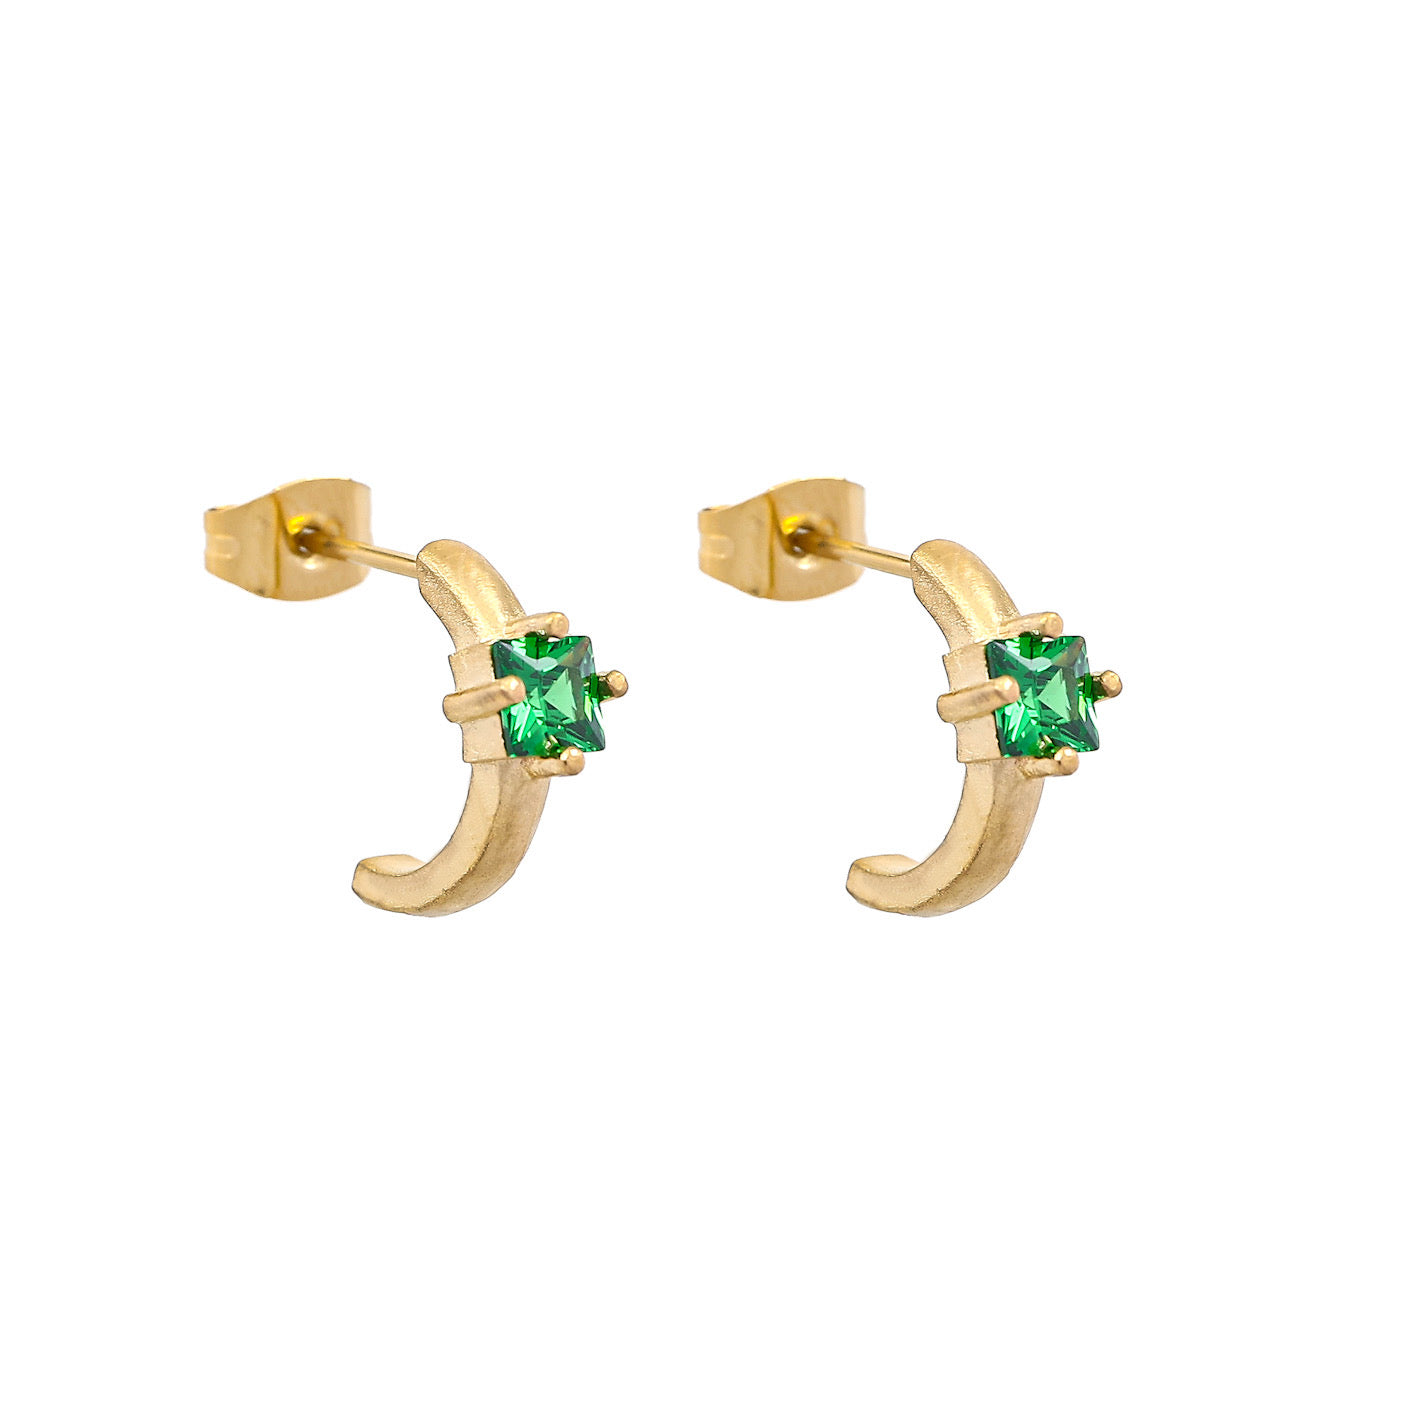 Emma Stud earrings - Emerald green